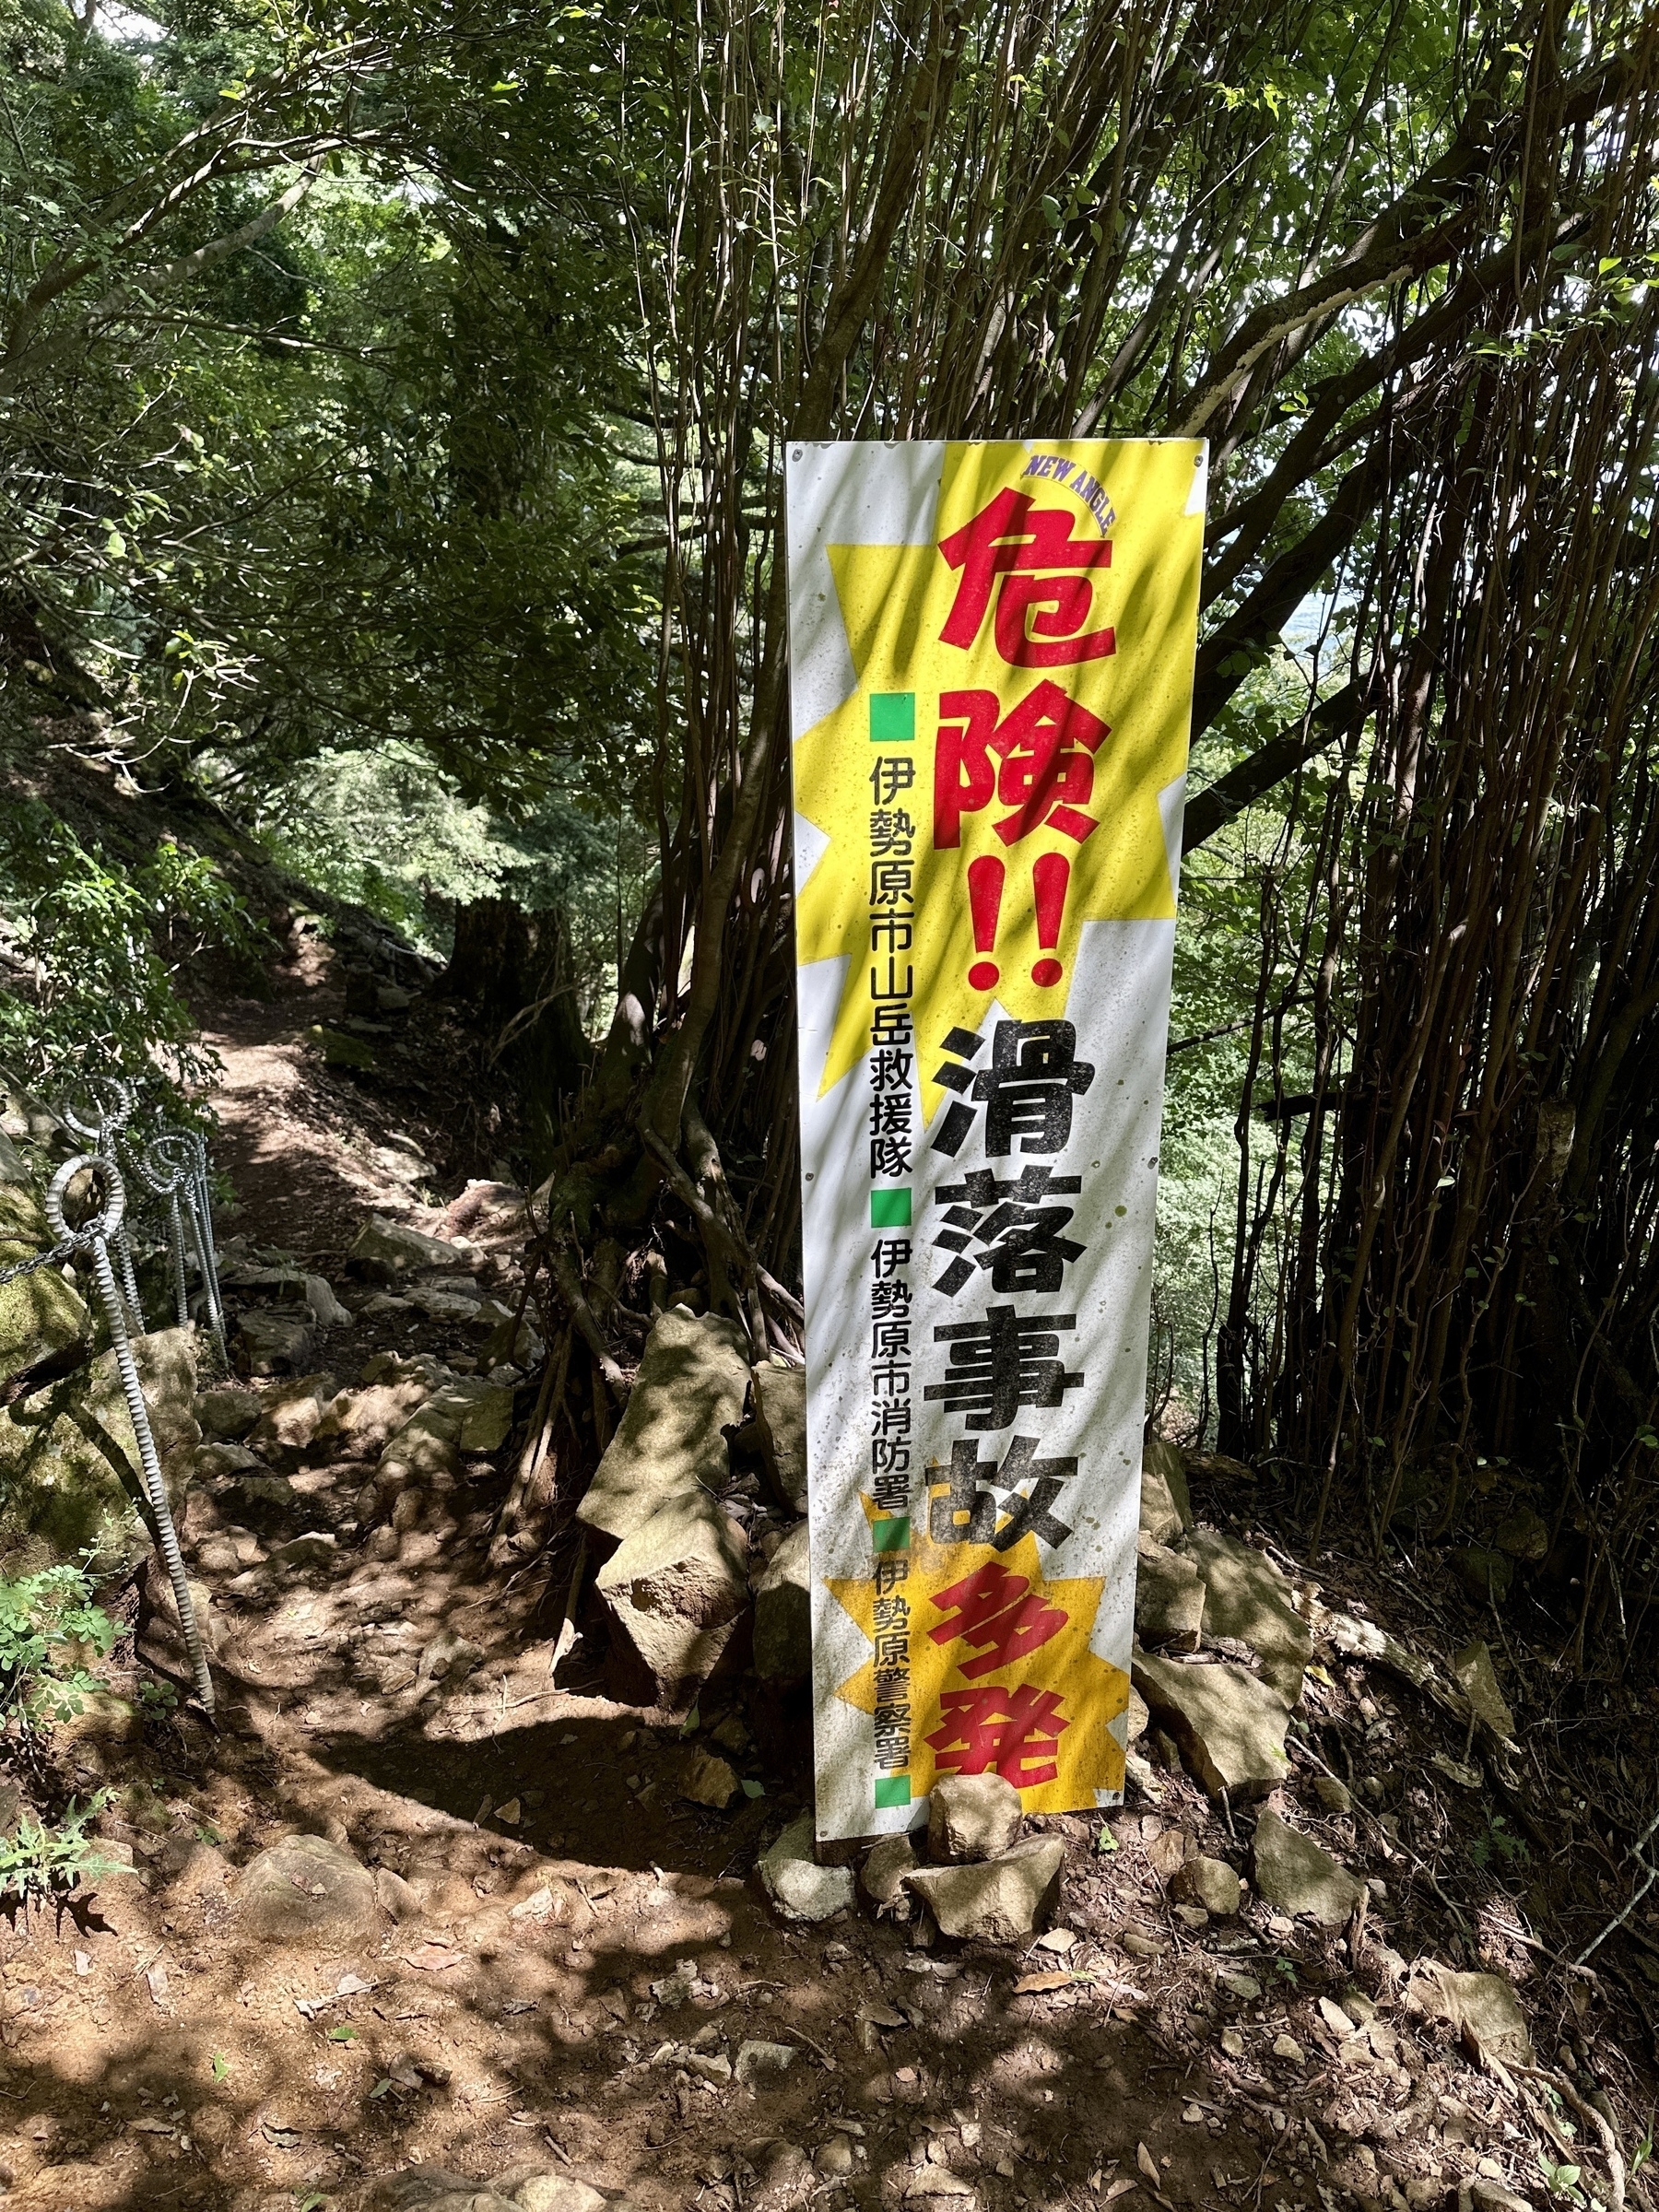 Sign warning of slip danger on Mt. Oyama